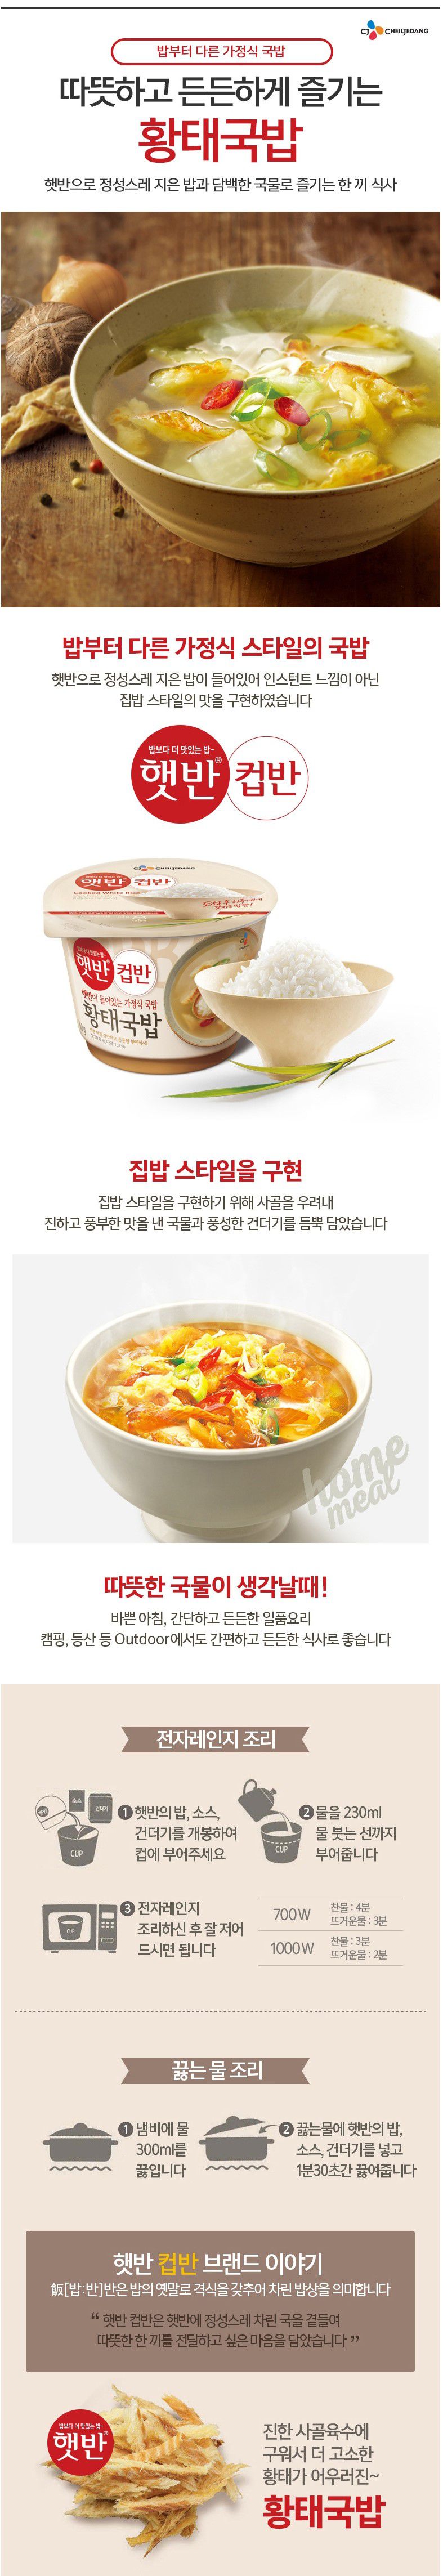 韓國食品-[CJ] 컵반[황태국밥] 170g